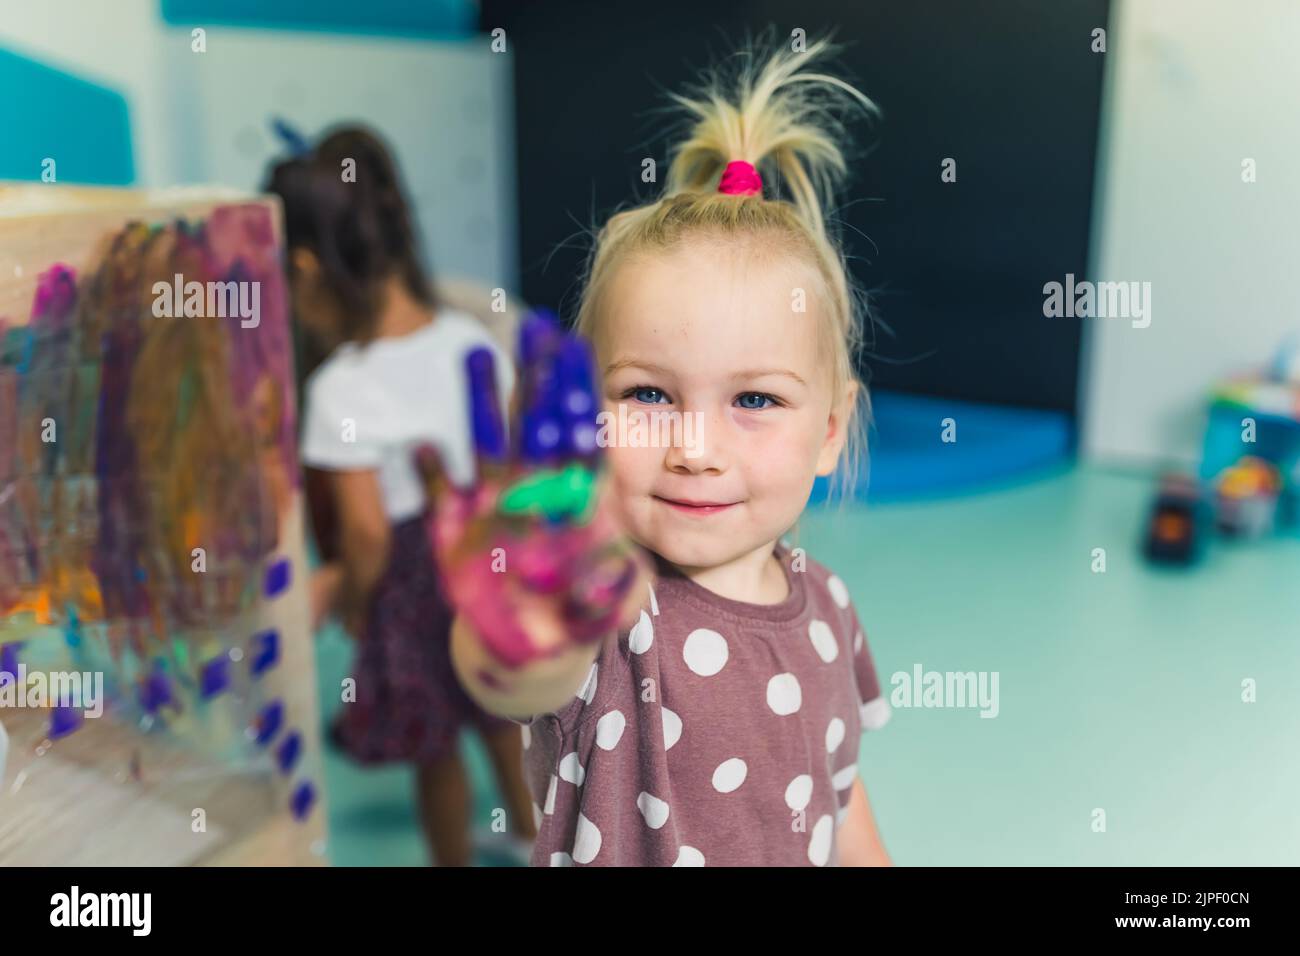 Frischhaltefolie Malerei im Kindergarten. Glücklich lächelnd blonde Kleinkind Mädchen zeigt ihre bemalte bunte Handfläche. Kunstunterricht mit Fingermalerei für Kinder sensorische Fähigkeiten, Kreativität und Vorstellungskraft Entwicklung. Hochwertige Fotos Stockfoto